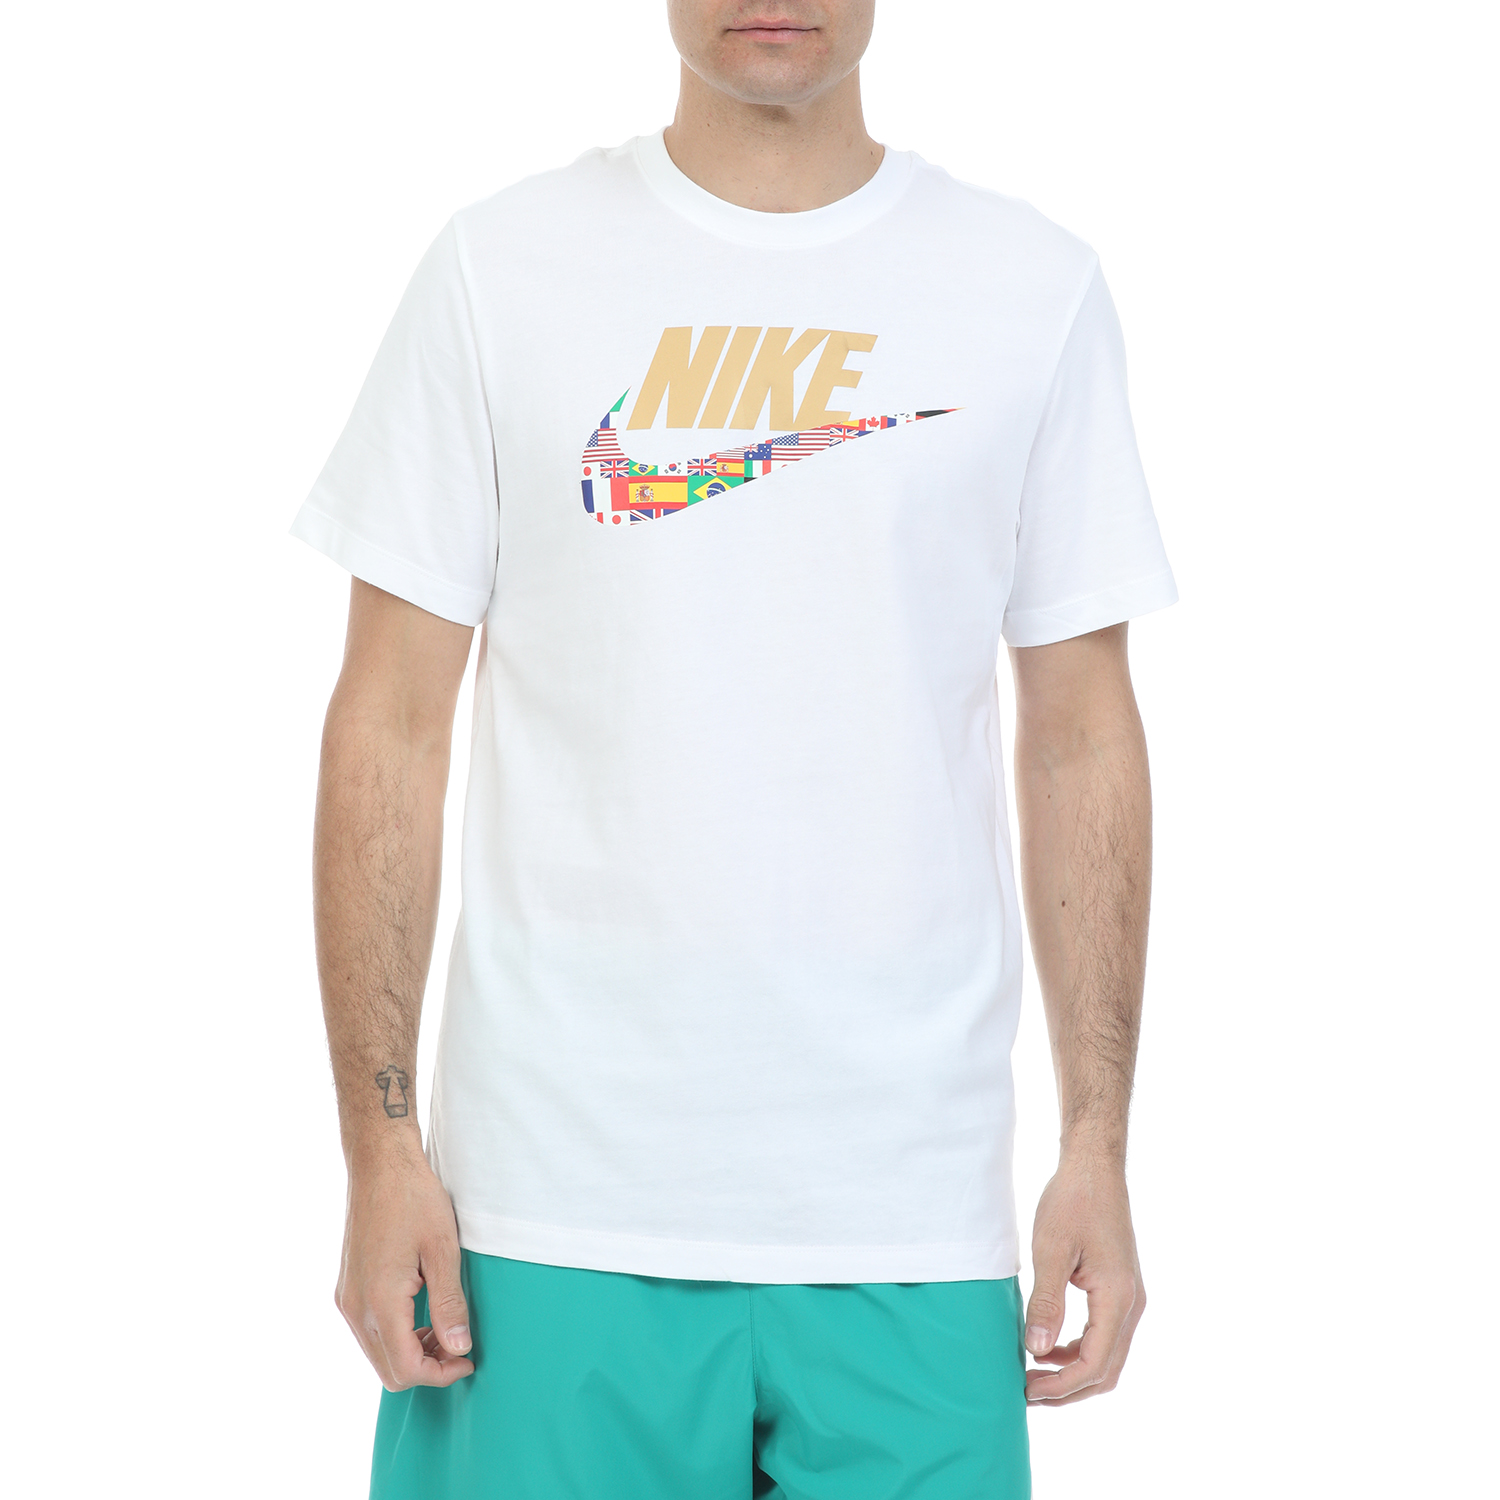 Ανδρικά/Ρούχα/Αθλητικά/T-shirt NIKE - Ανδρικό t-shirt NIKE NSW TEE PREHEAT HBR λευκό